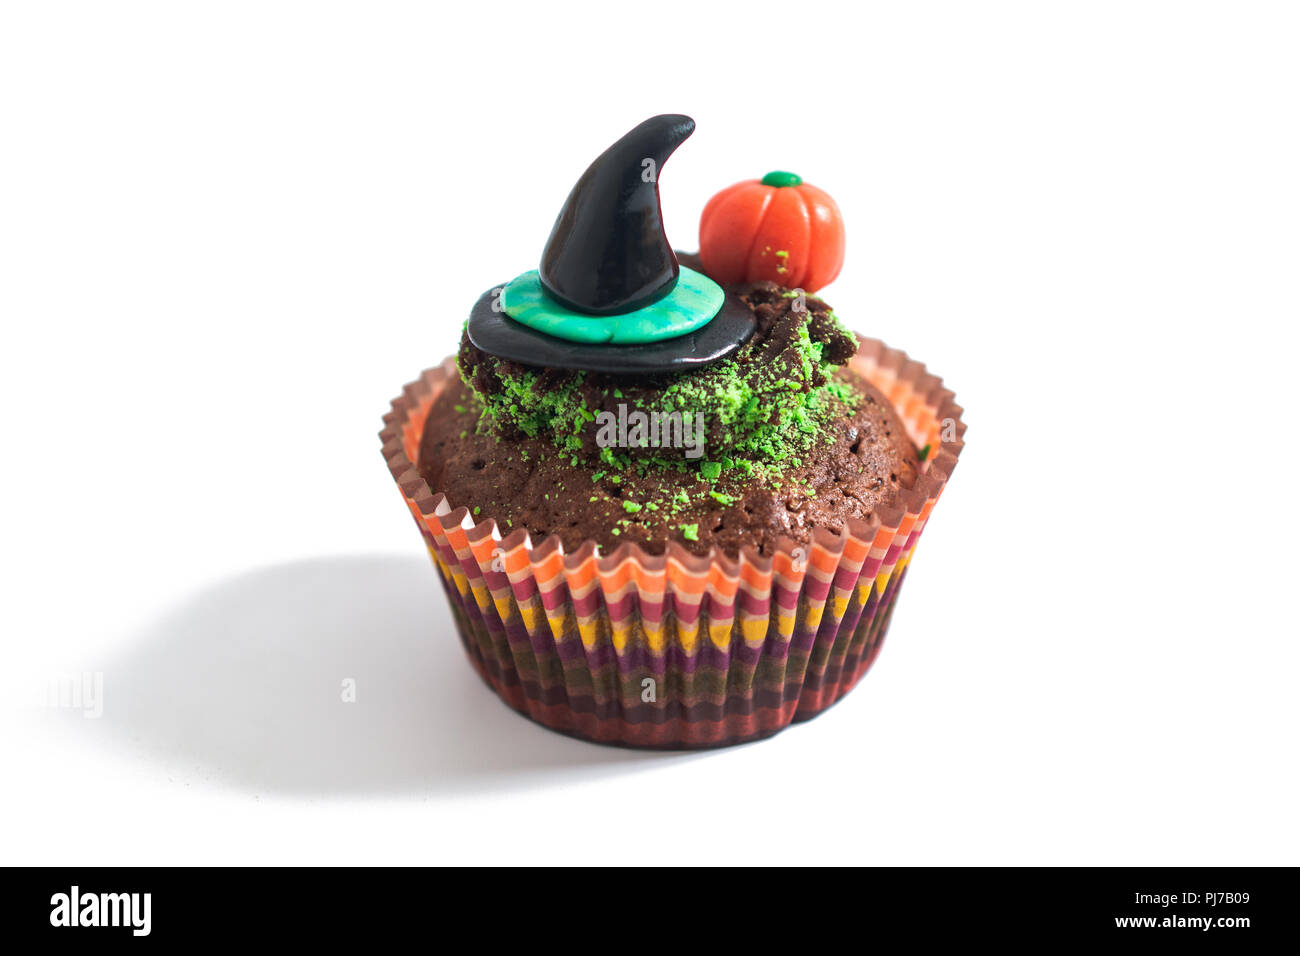 Halloween de fantaisie colorée alimentaire avec cupcake brownies fondant la citrouille et sorcière décorer sur fond blanc Banque D'Images